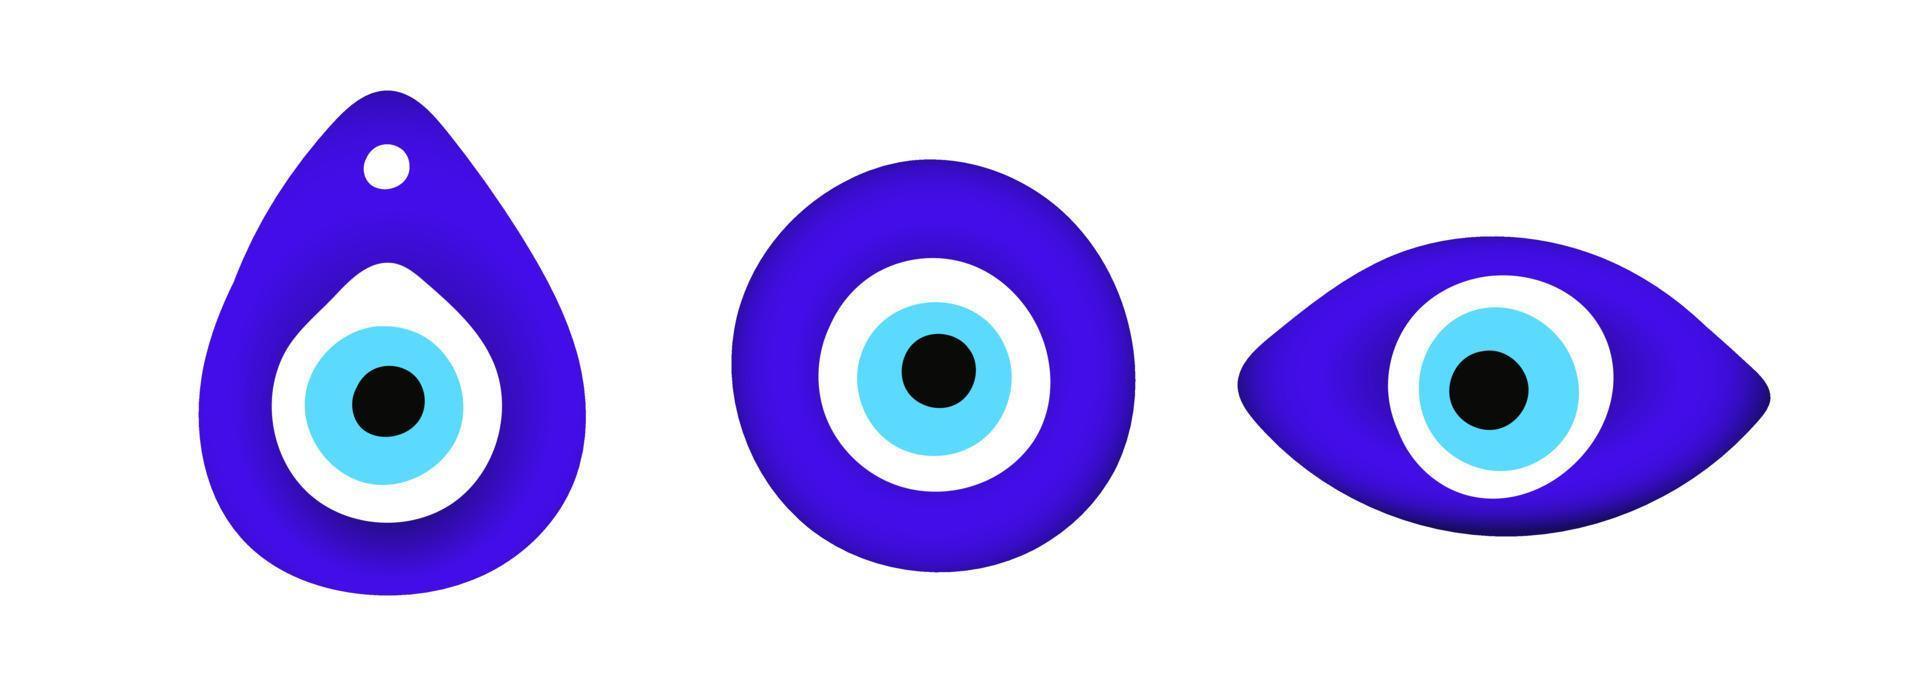 azul oriental mal de ojo símbolo amuleto estilo plano diseño vector ilustración aislado sobre fondo blanco.